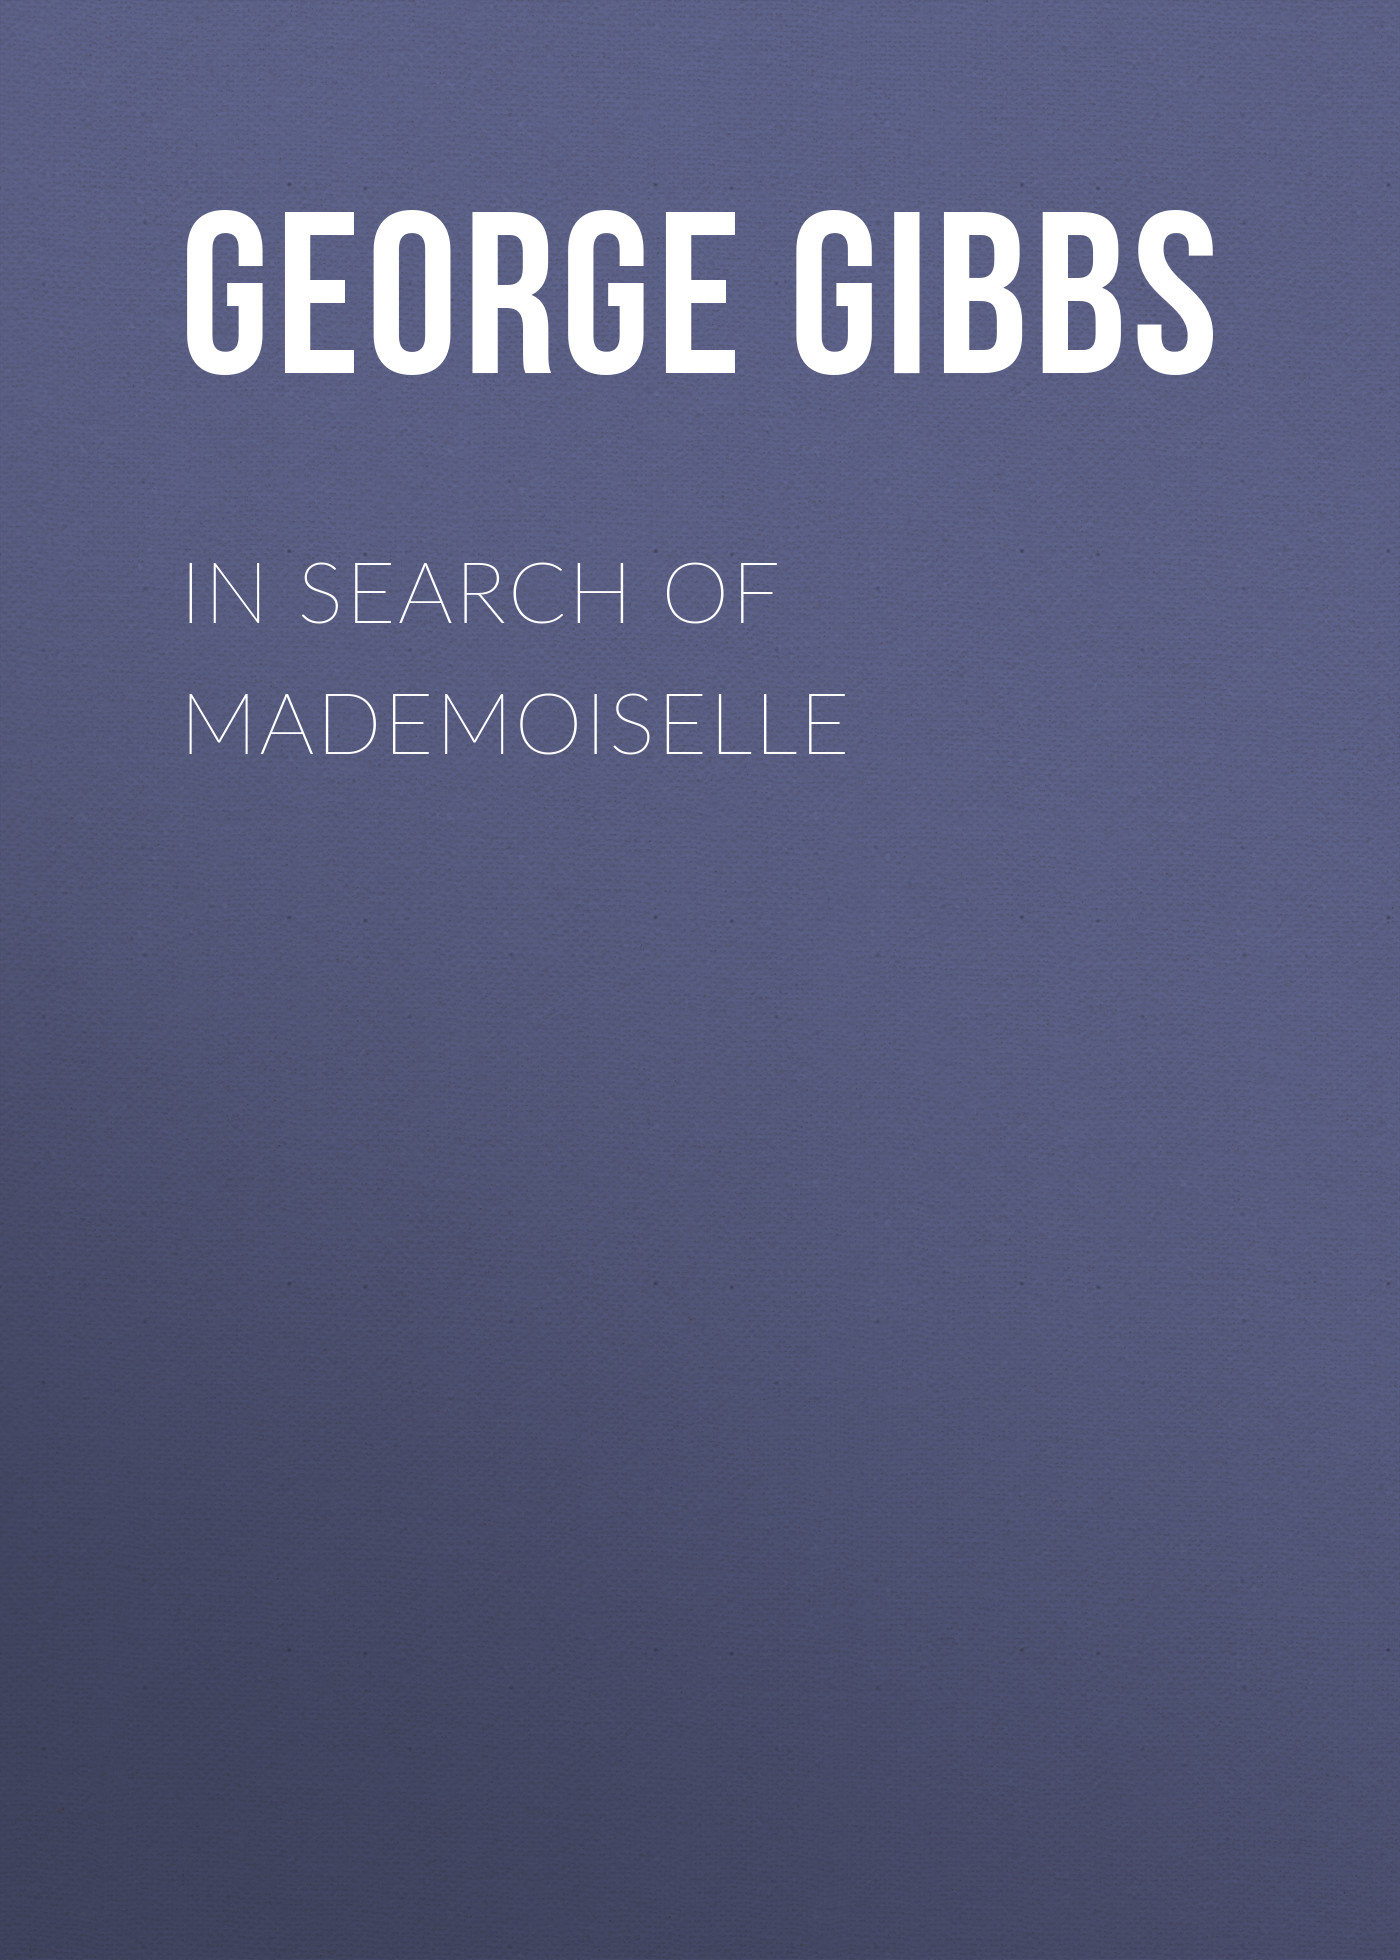 Книга In Search of Mademoiselle из серии , созданная George Gibbs, может относится к жанру Зарубежная классика. Стоимость электронной книги In Search of Mademoiselle с идентификатором 23155115 составляет 5.99 руб.